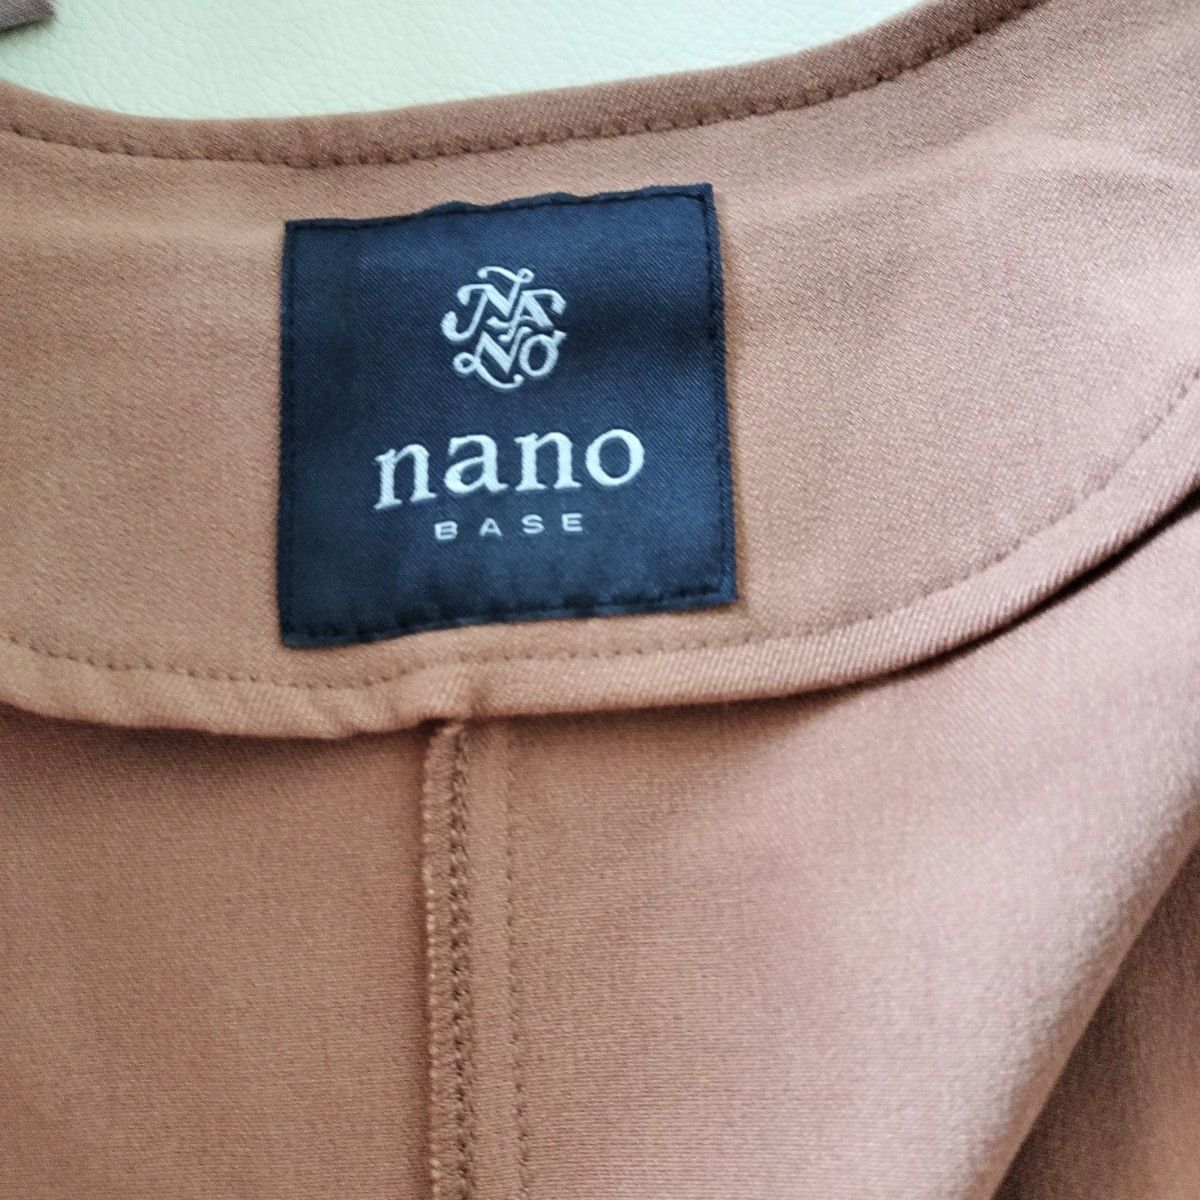 【nano・universe】 ノーカラーコート ドロストコート ナノユニバース ロングコート